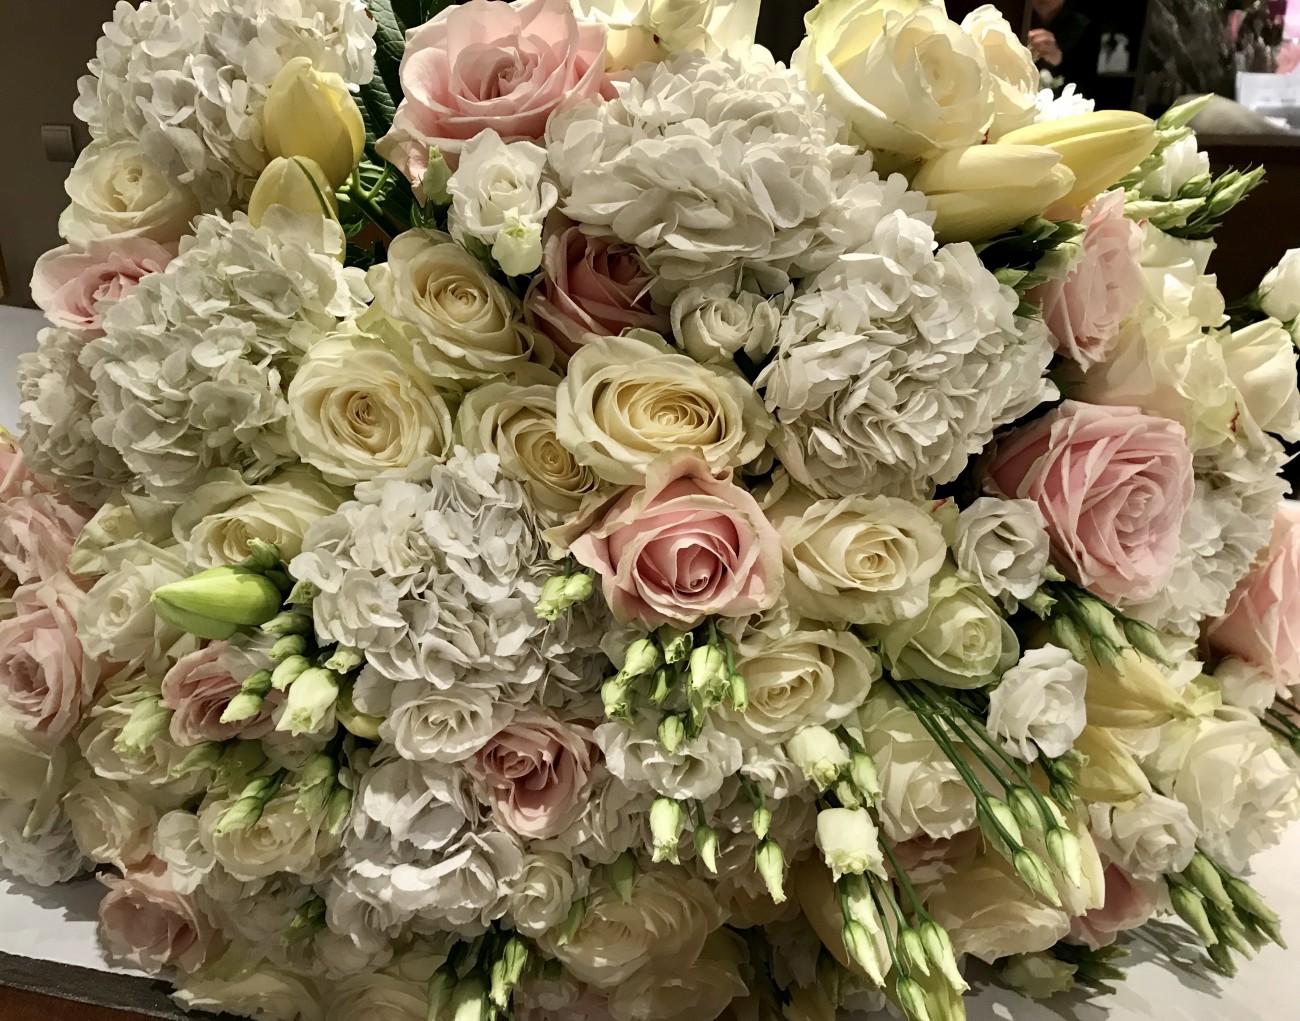 Flowers / Jasmine Fleurs / The Courchevel florist since 1992